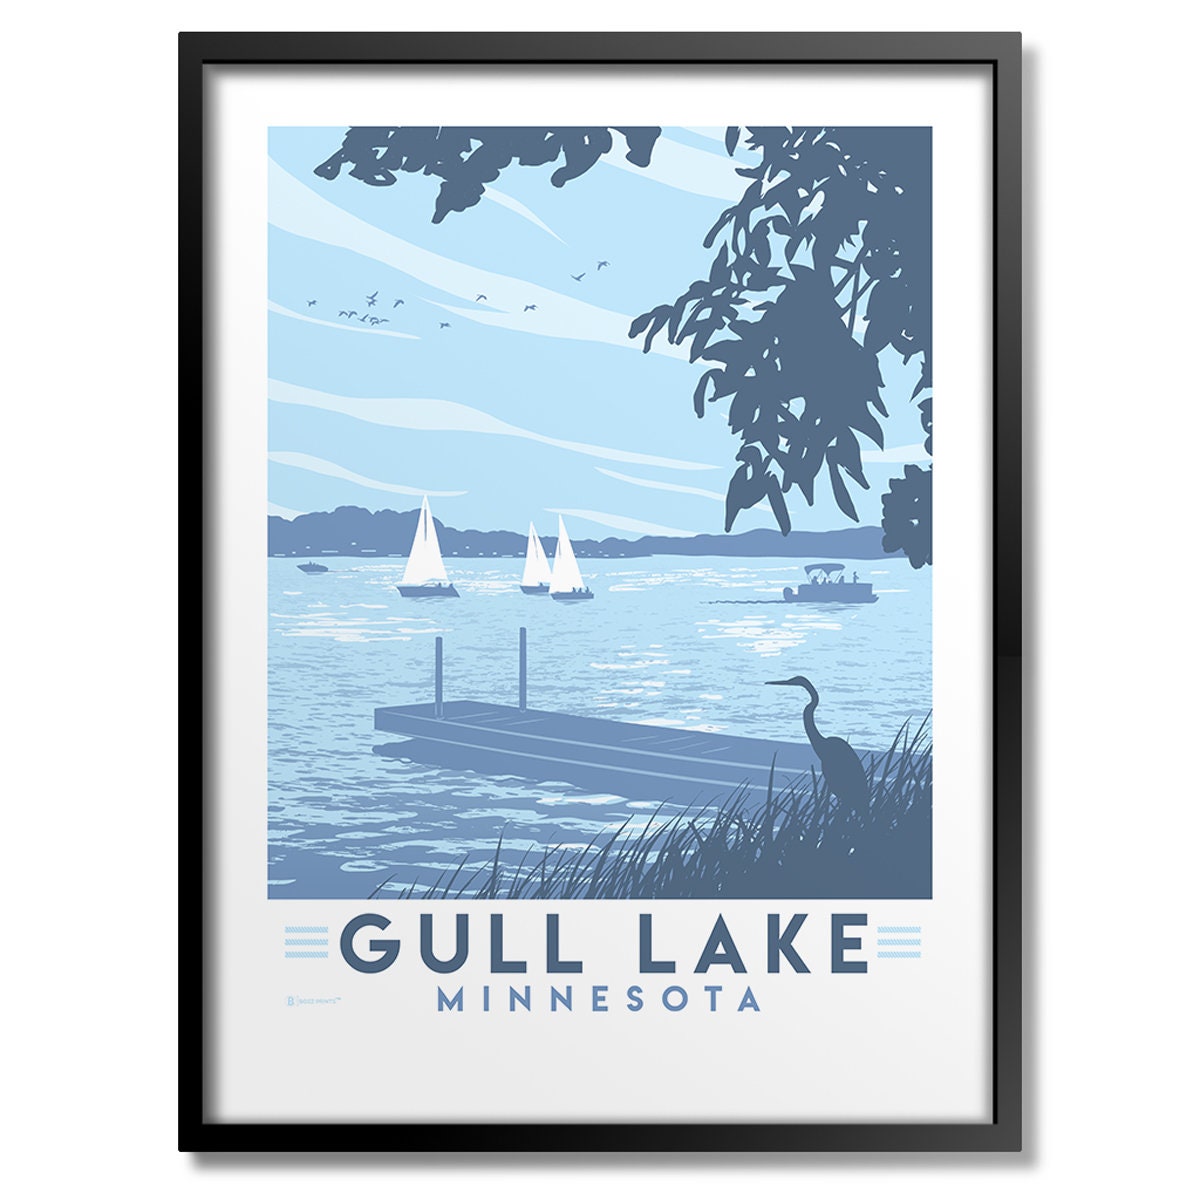 Gull Lake Minnesota image